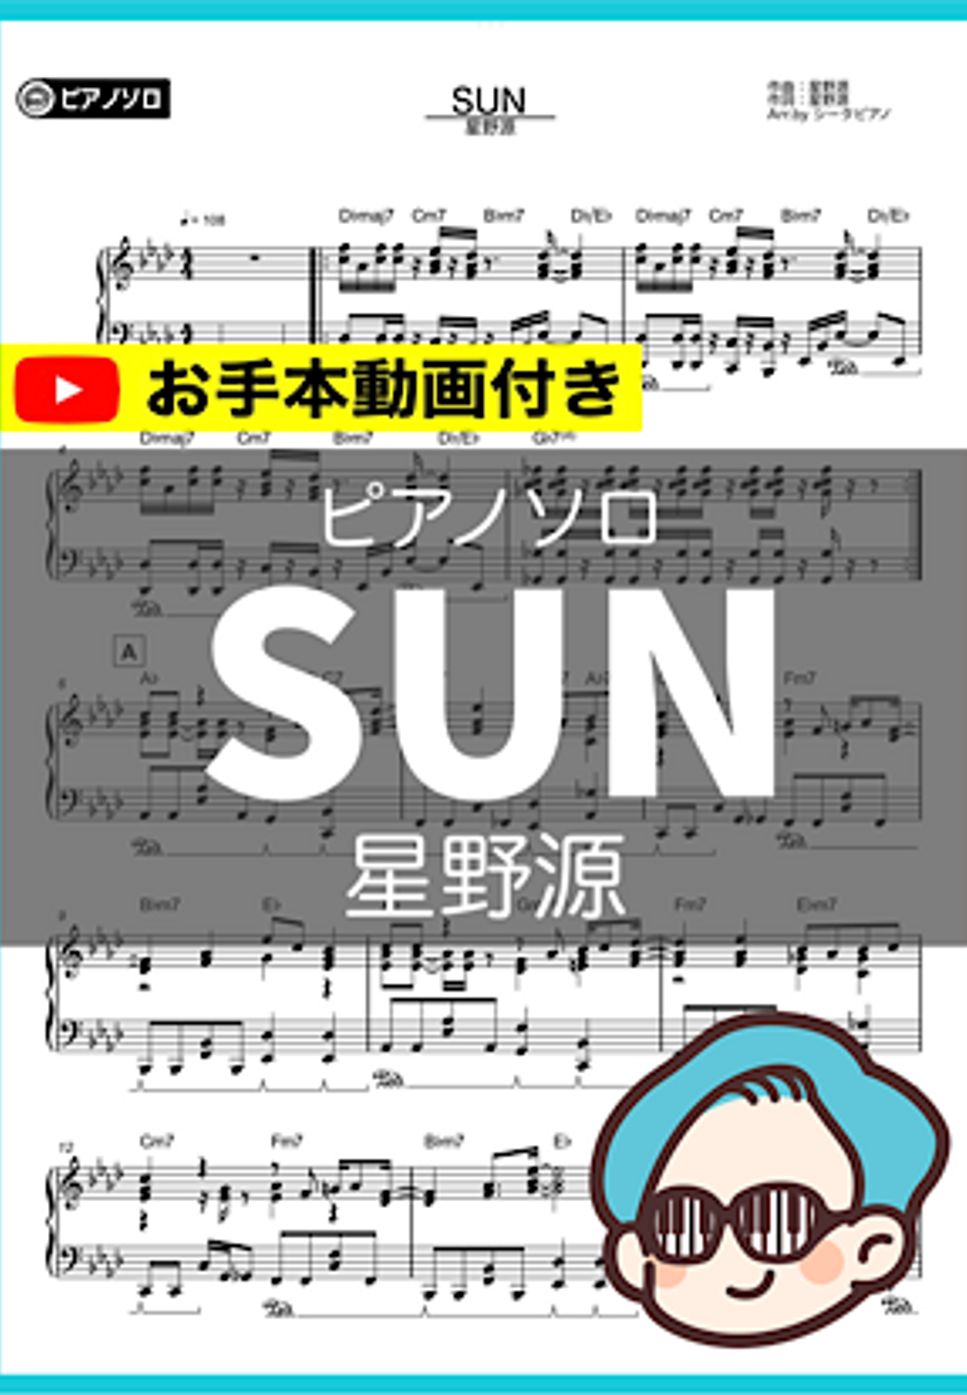 星野源 - SUN by シータピアノ